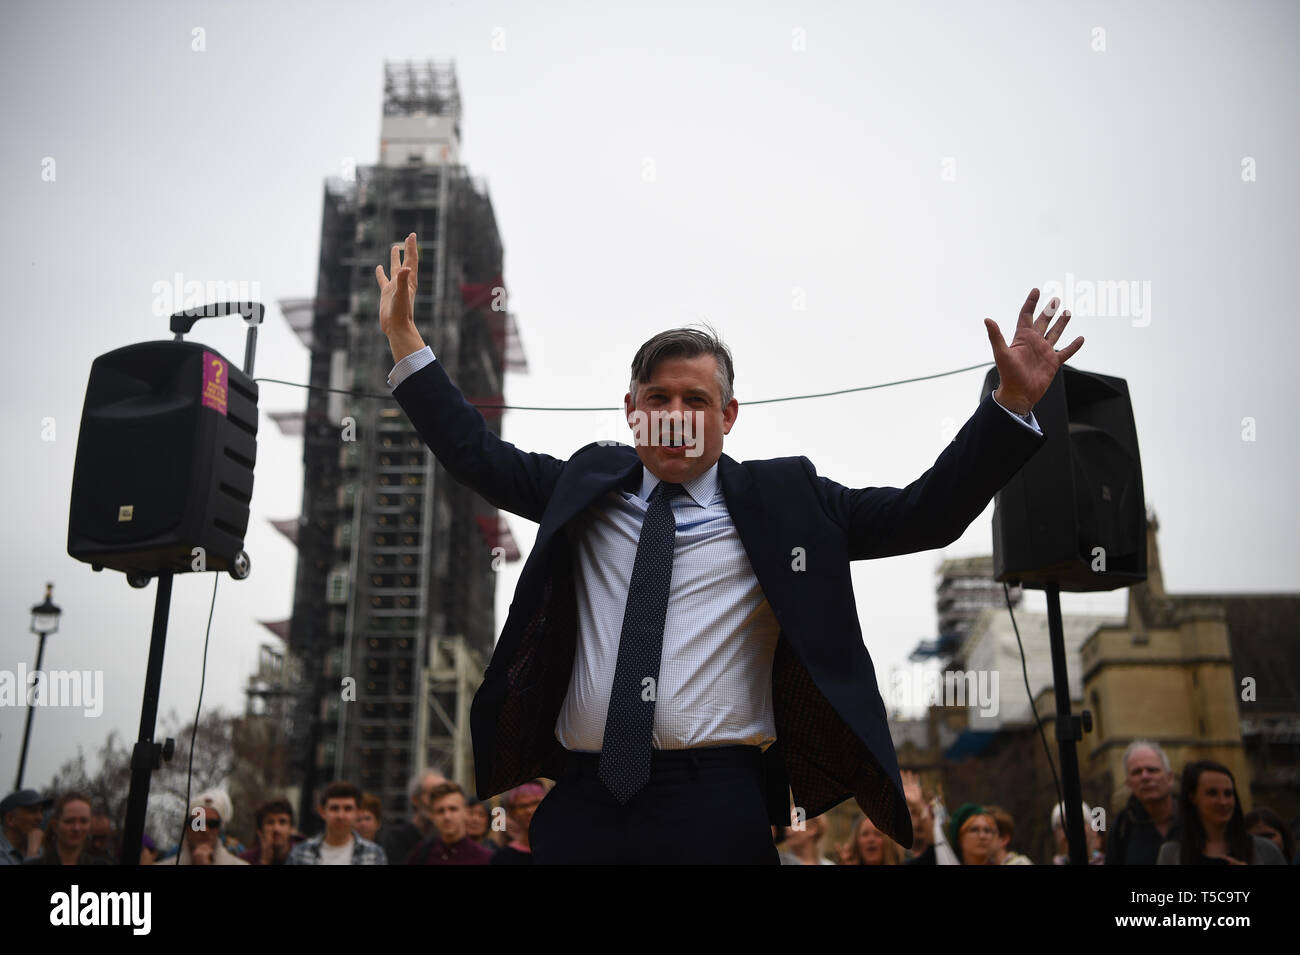 Shadow el secretario de Salud, Jon Ashworth, habla durante una rebelión de extinción protesta en la plaza del parlamento en Westminster, Londres. Más de 1.000 personas han sido detenidas durante las protestas en el cambio climático como la policía de Londres borra las barricadas será responsable de la interrupción en la capital. Foto de stock